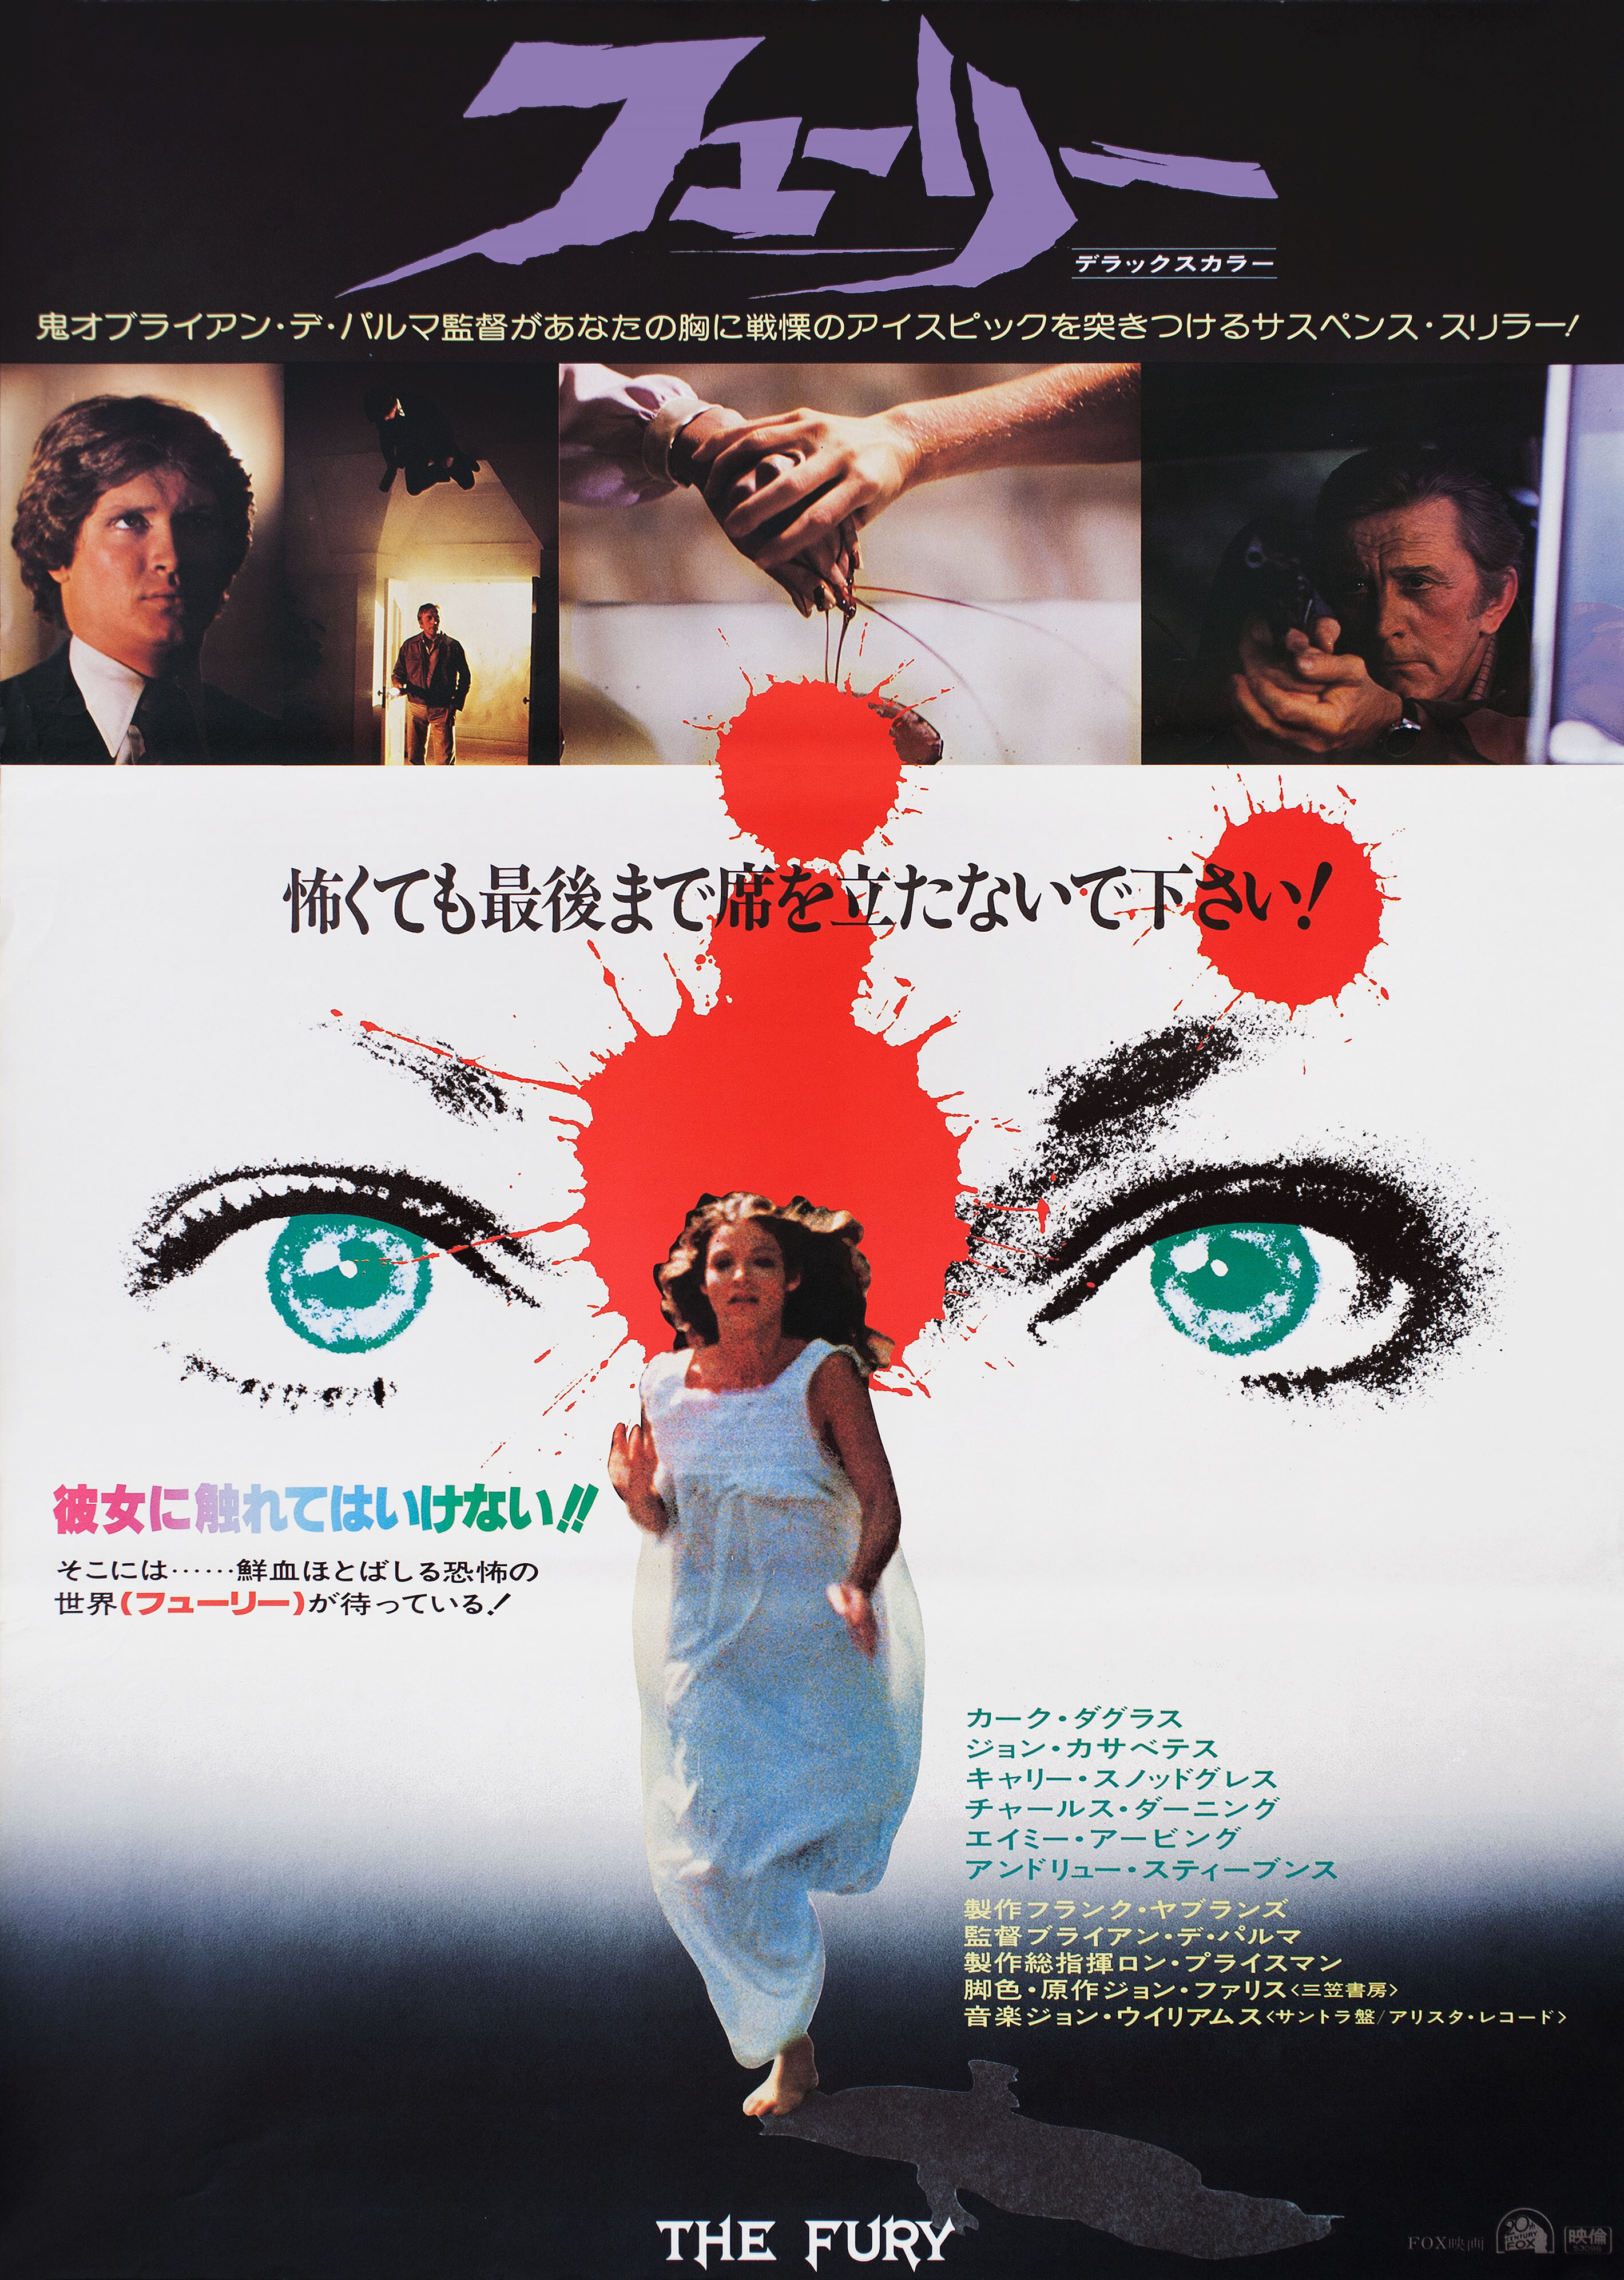 Ярость (The Fury, 1978), режиссёр Брайан Де Пальма, японский постер к фильму (ужасы, 1978 год)